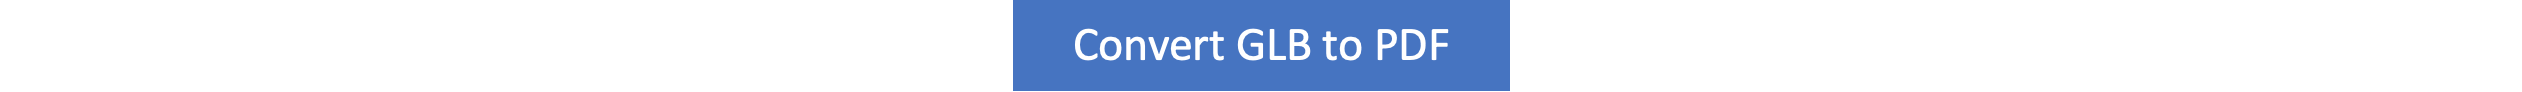 GLB zu PDF